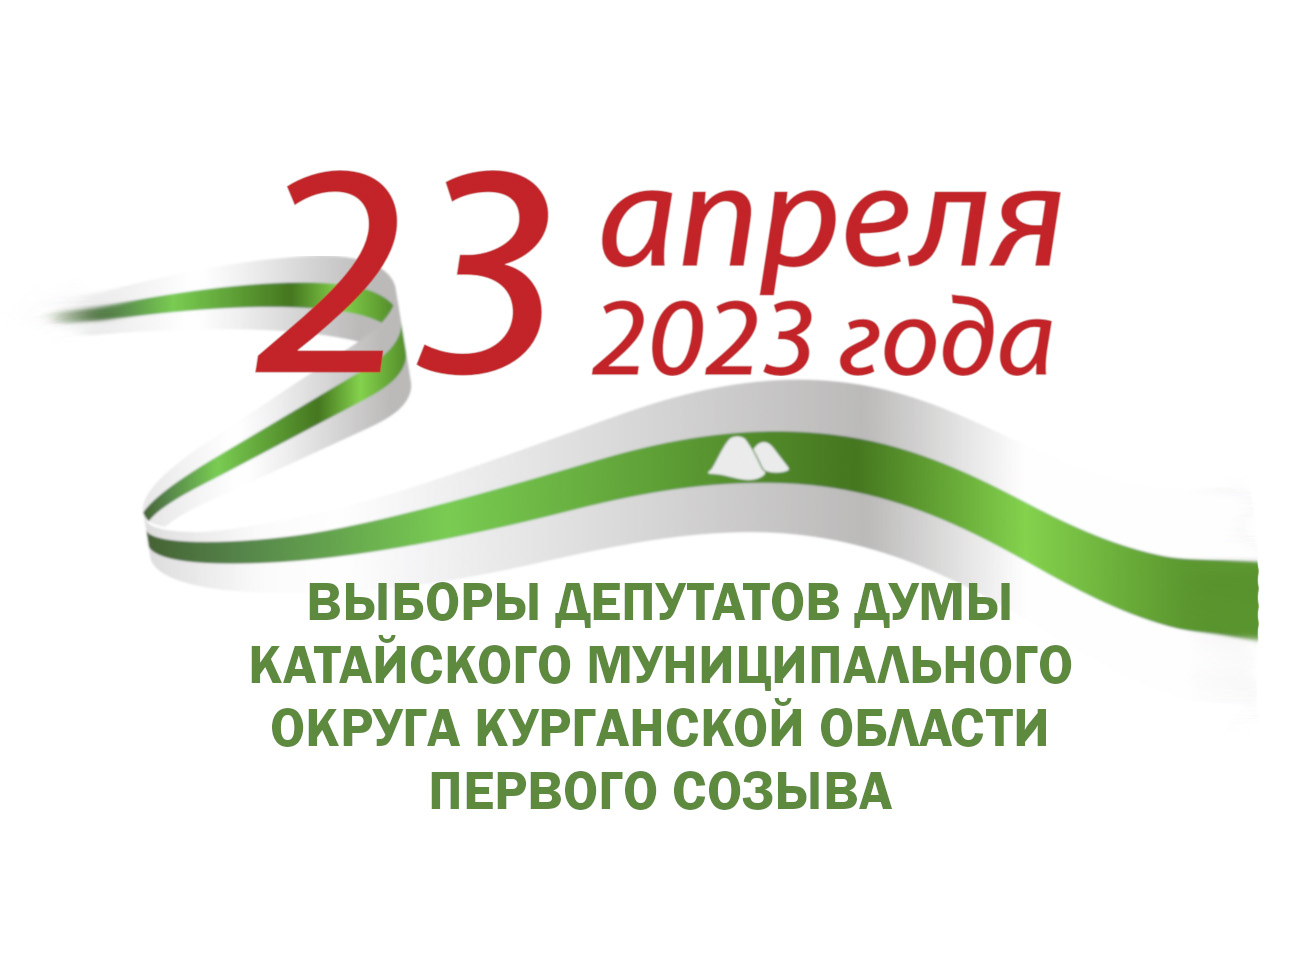 23 апреля 2023 года выборы депутатов Думы Катайского муниципального округа Курганской области первого созыва.